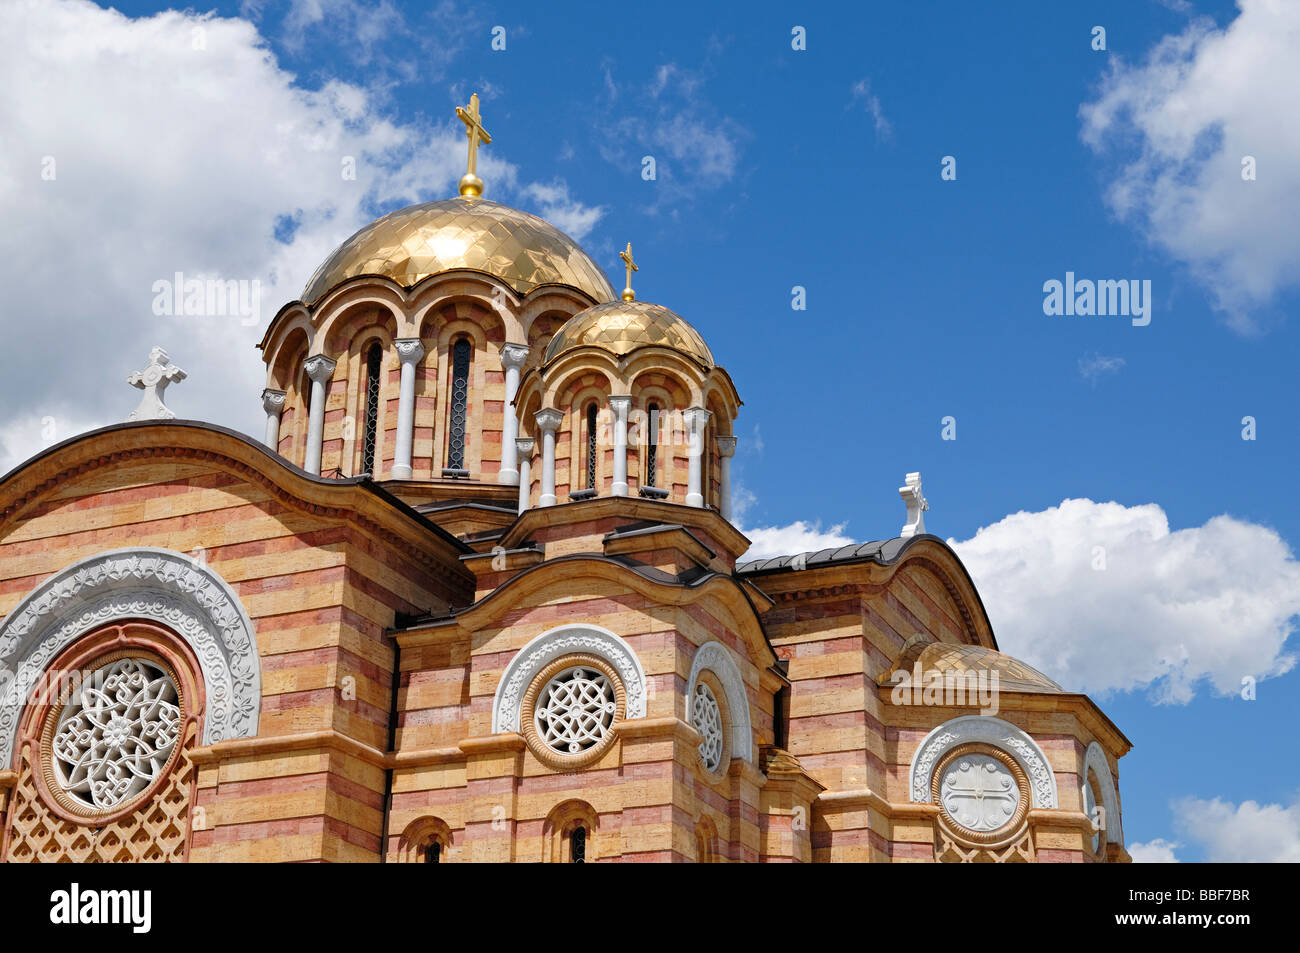 L'Église orthodoxe dans le centre de Banja Luka Bosnie Herzégovine Banque D'Images